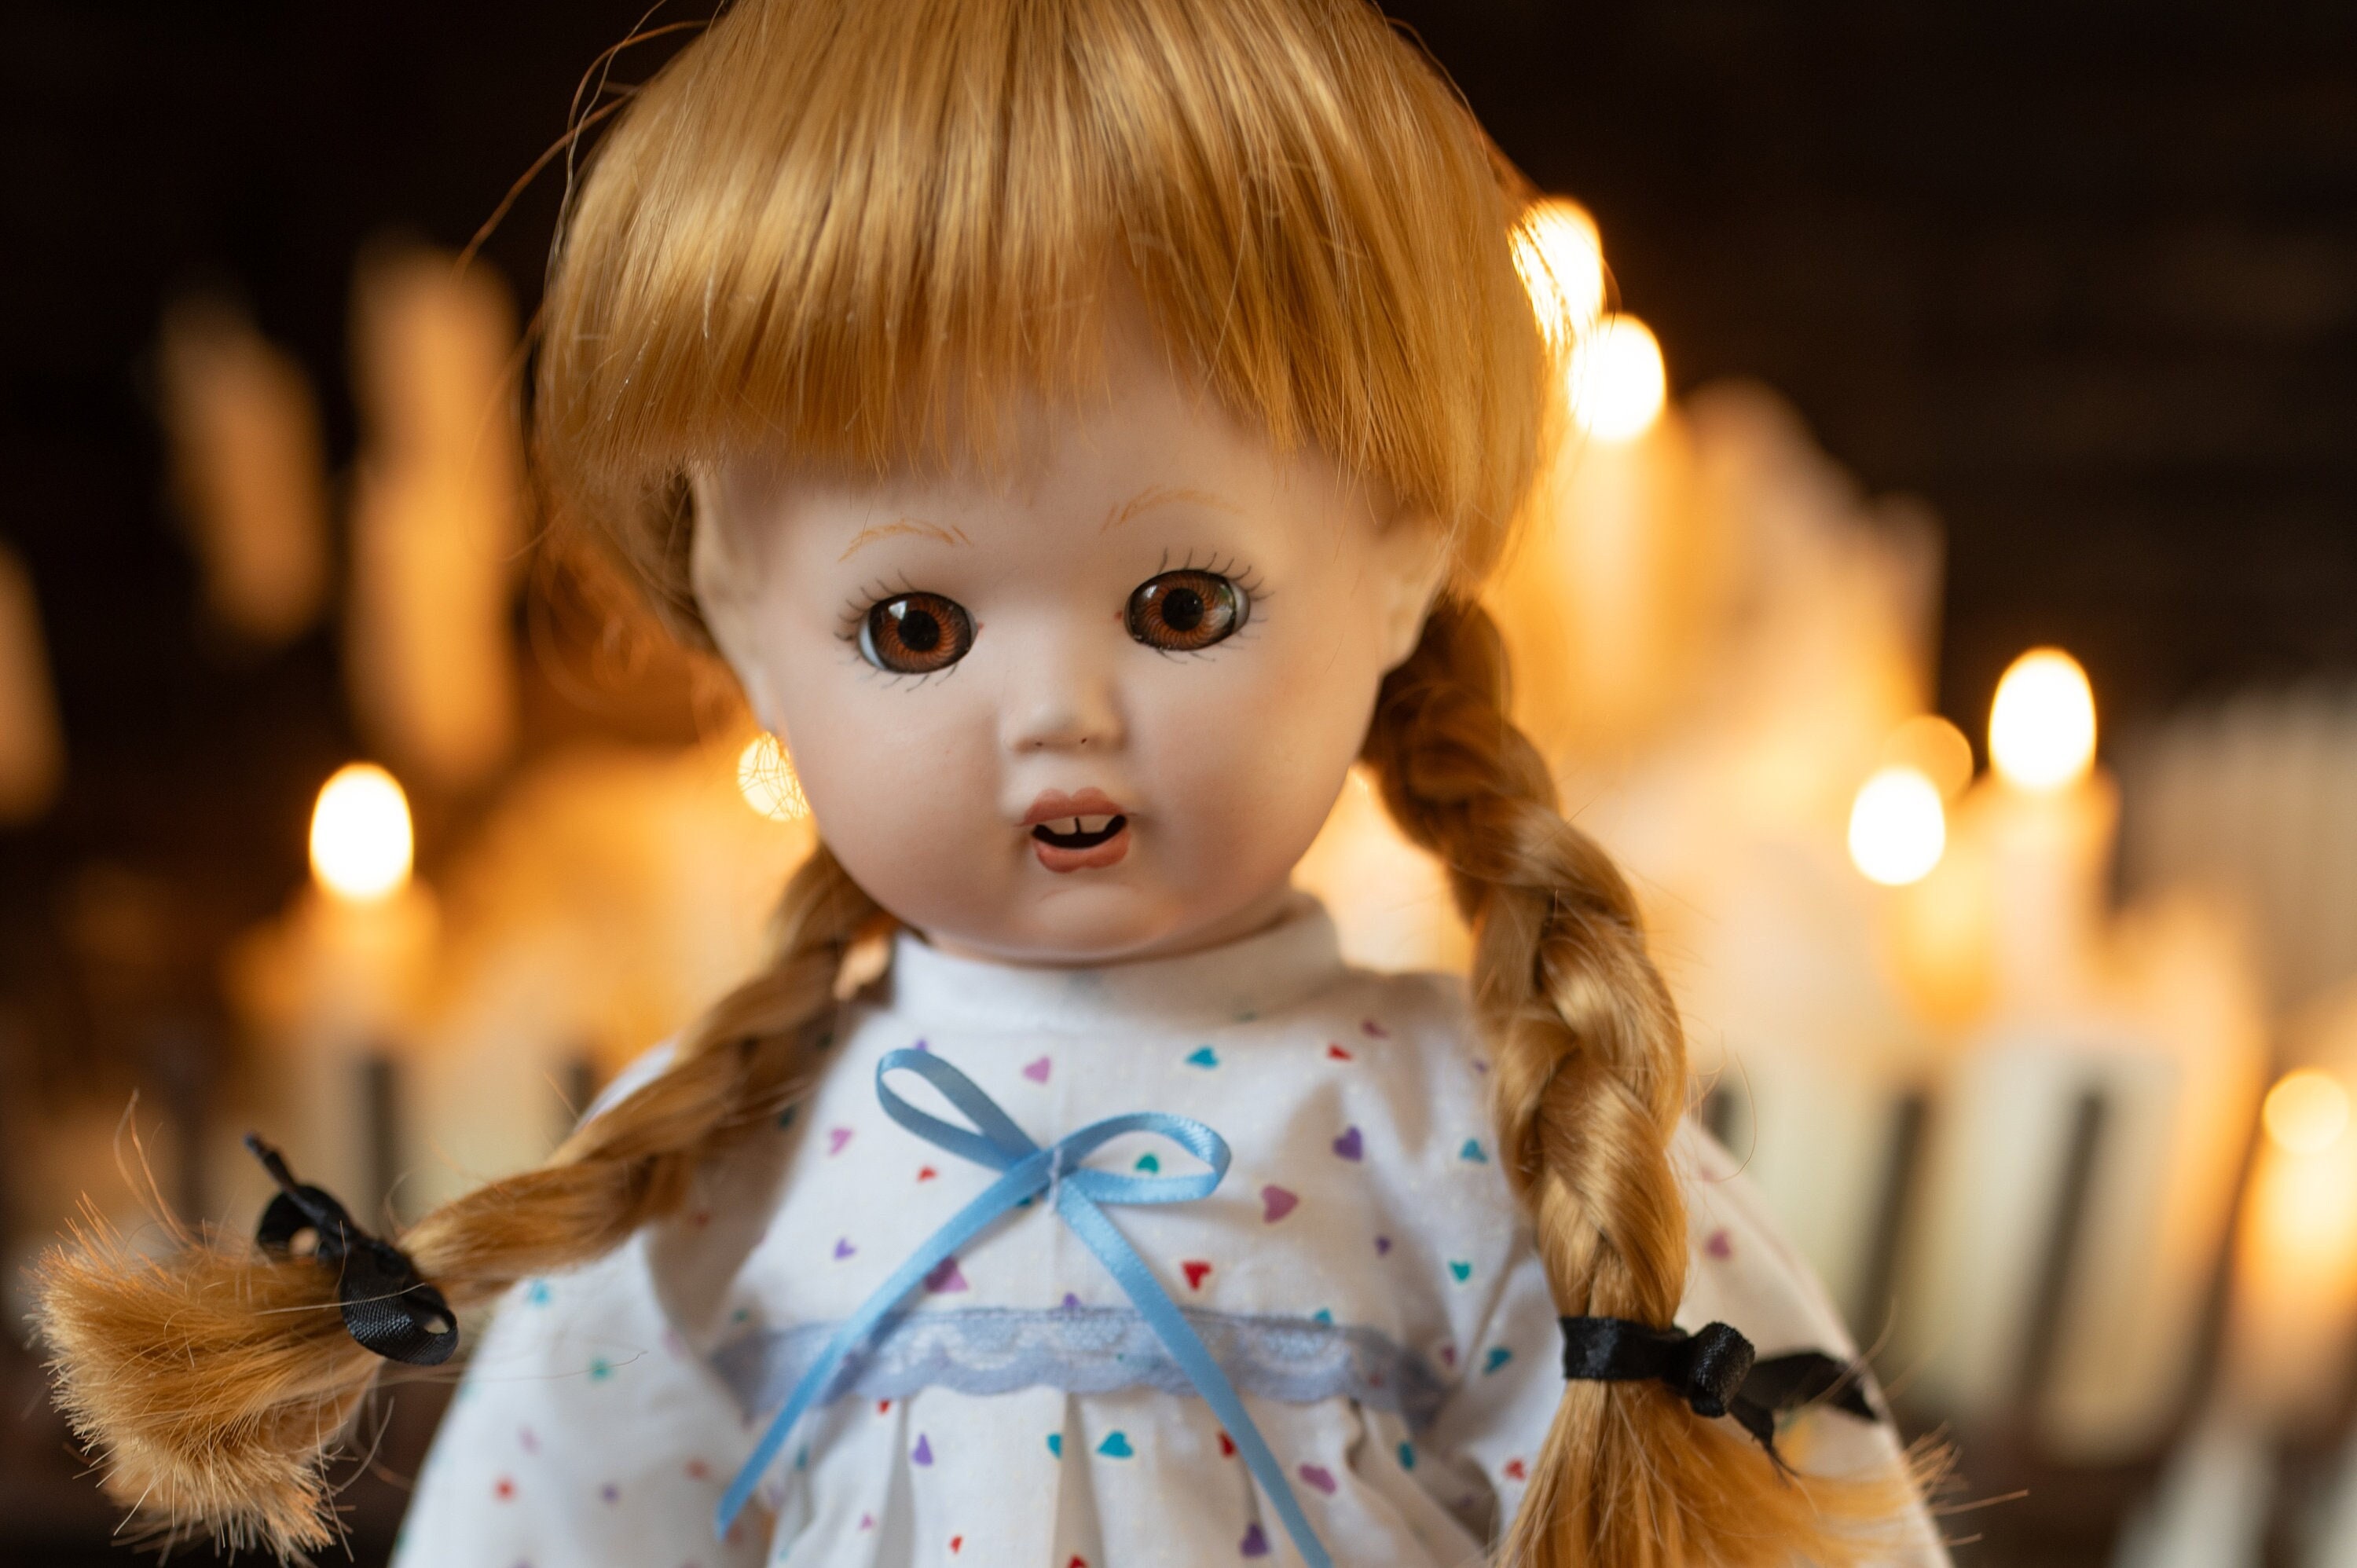 Poupée hantée activée par le son de 30,5 cm, poupée d'Halloween marchant  pour décorations d'Halloween, poupée effrayante et effrayante avec son  horrible poupée qui marche clignote (fille) : : Cuisine et Maison